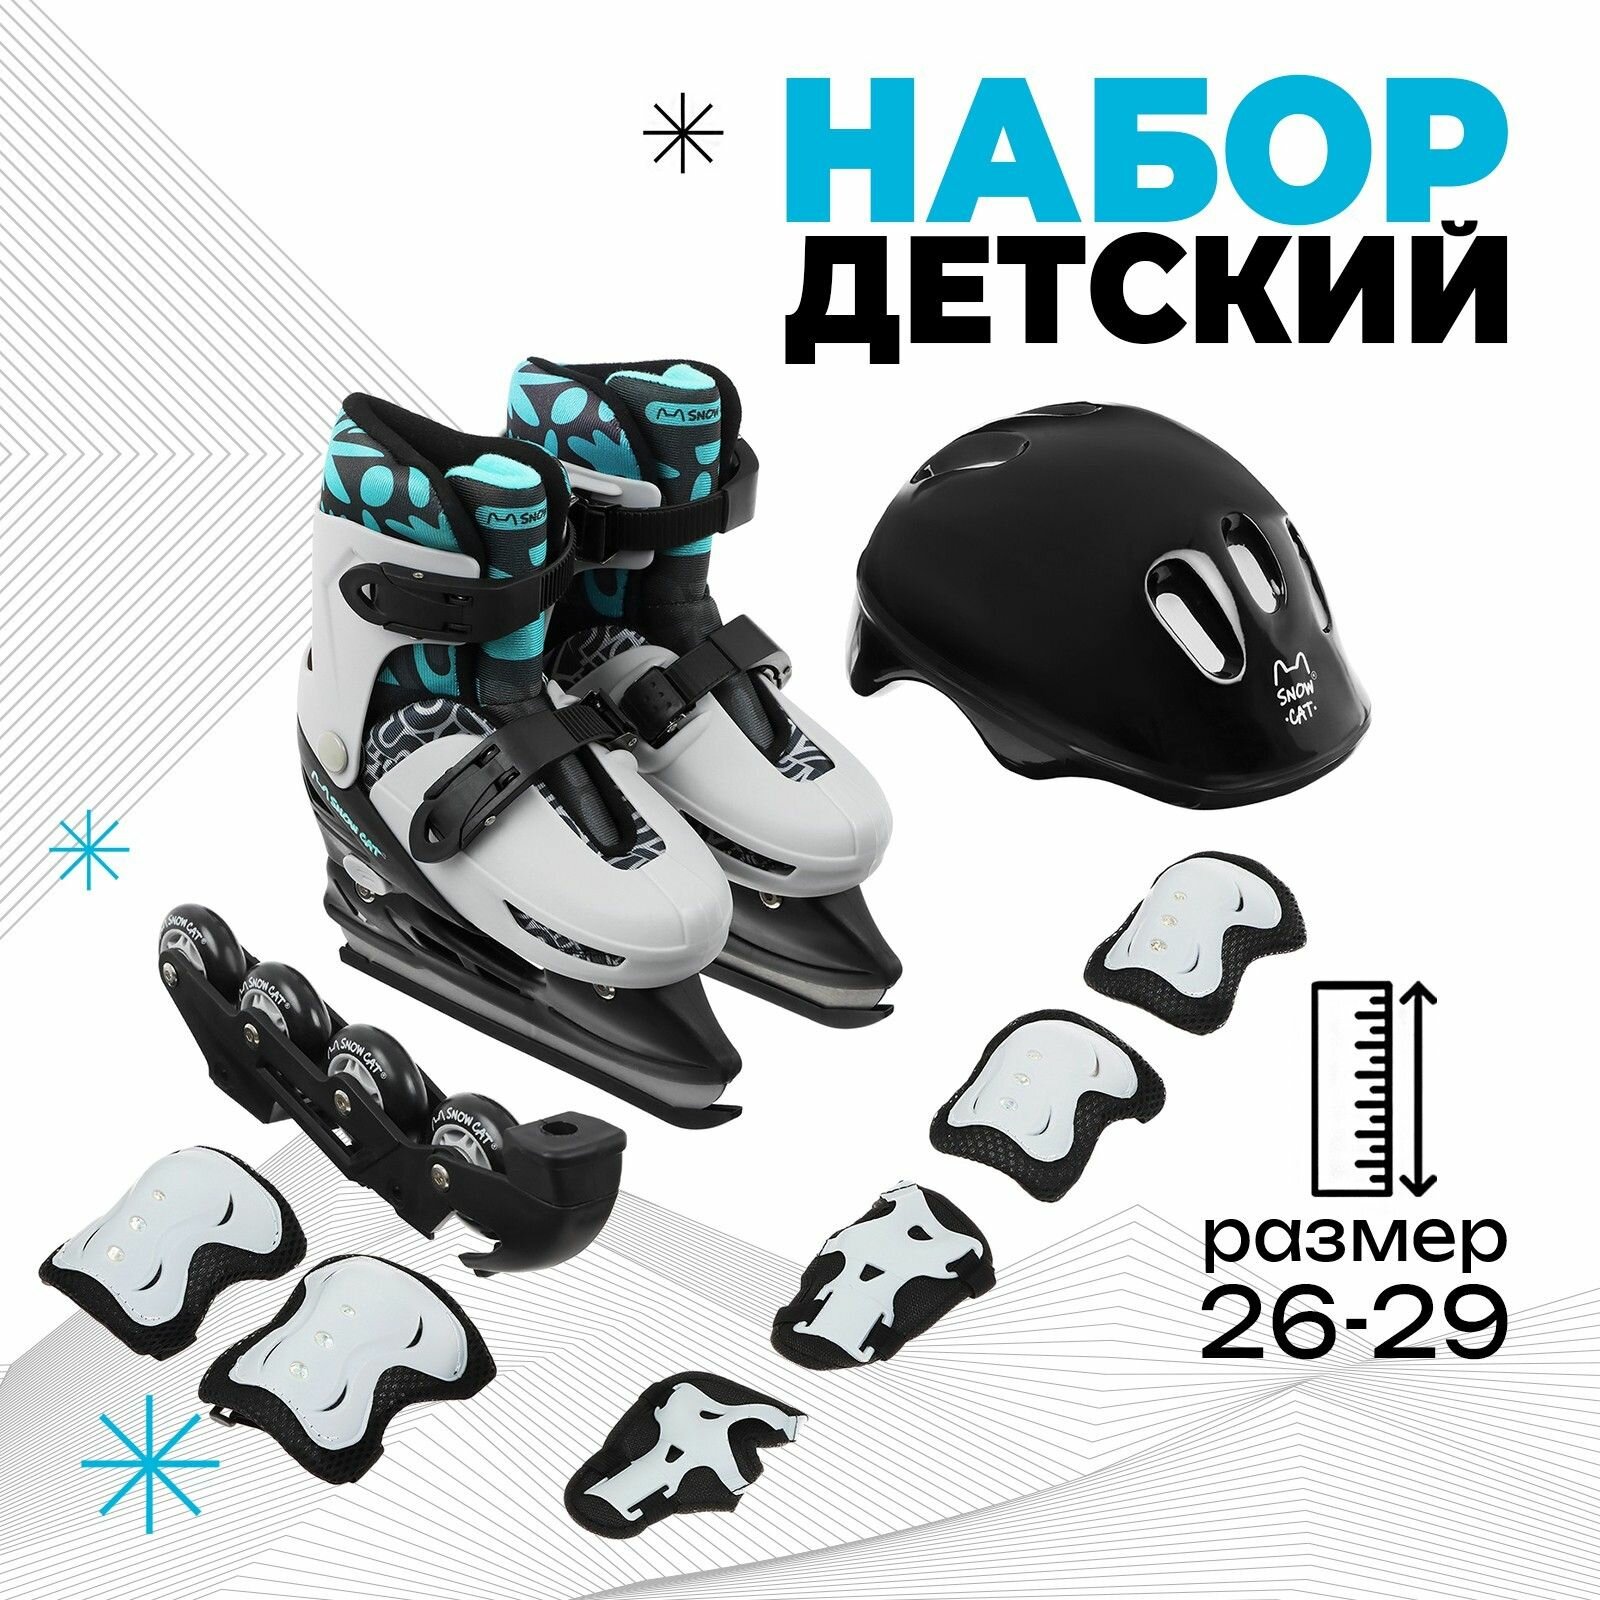 Коньки-ролики детские раздвижные Snow Cat 2 в 1, на лето и зиму, ледовые со съемной роликовой платформой, размер 26-29, + защитный набор: шлем, наколенники, налокотники и защита запястья